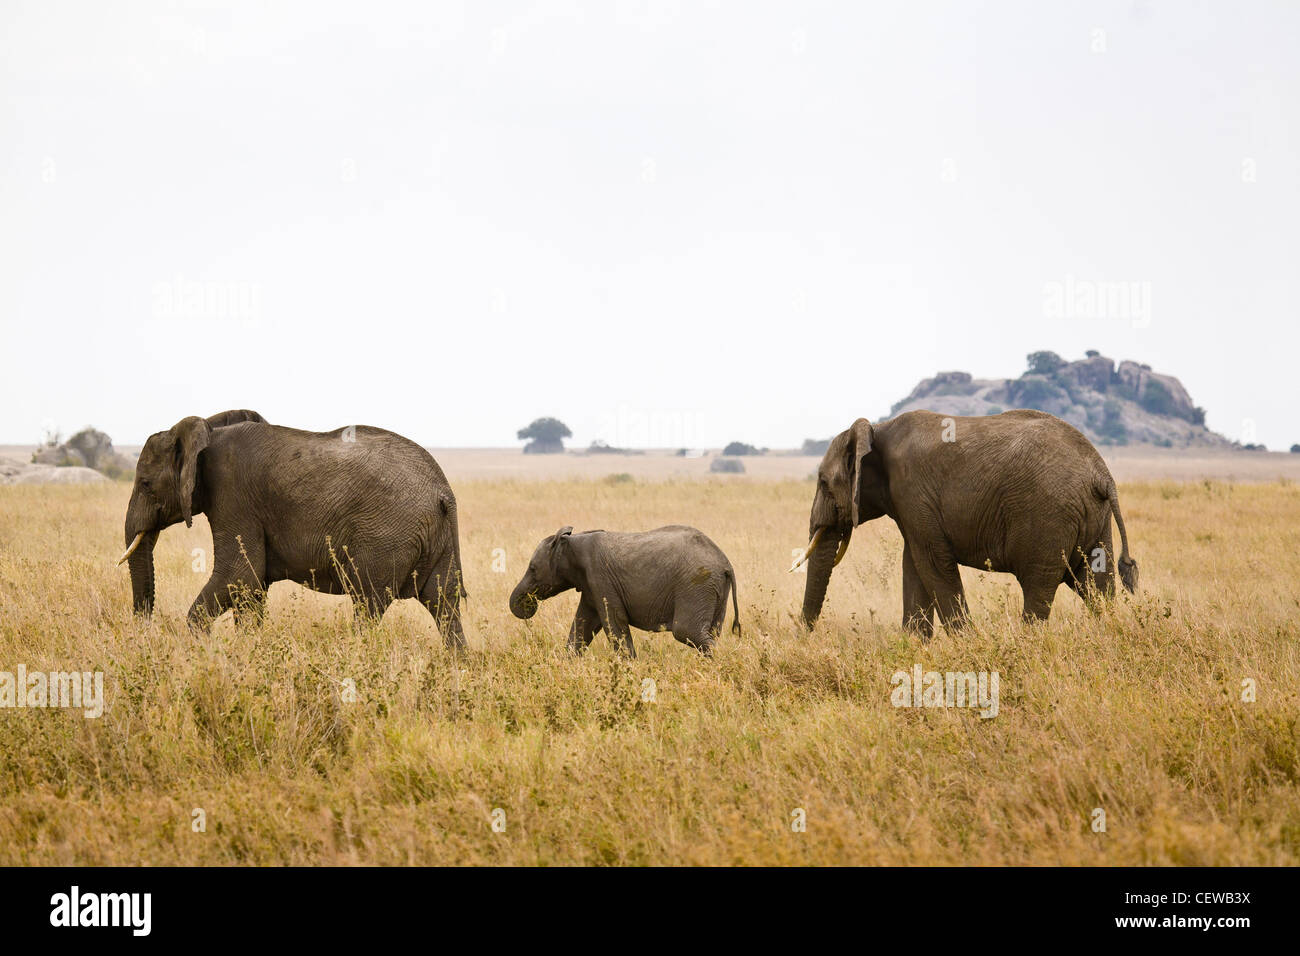 Elephant family walking across the savanna. Stock Photo